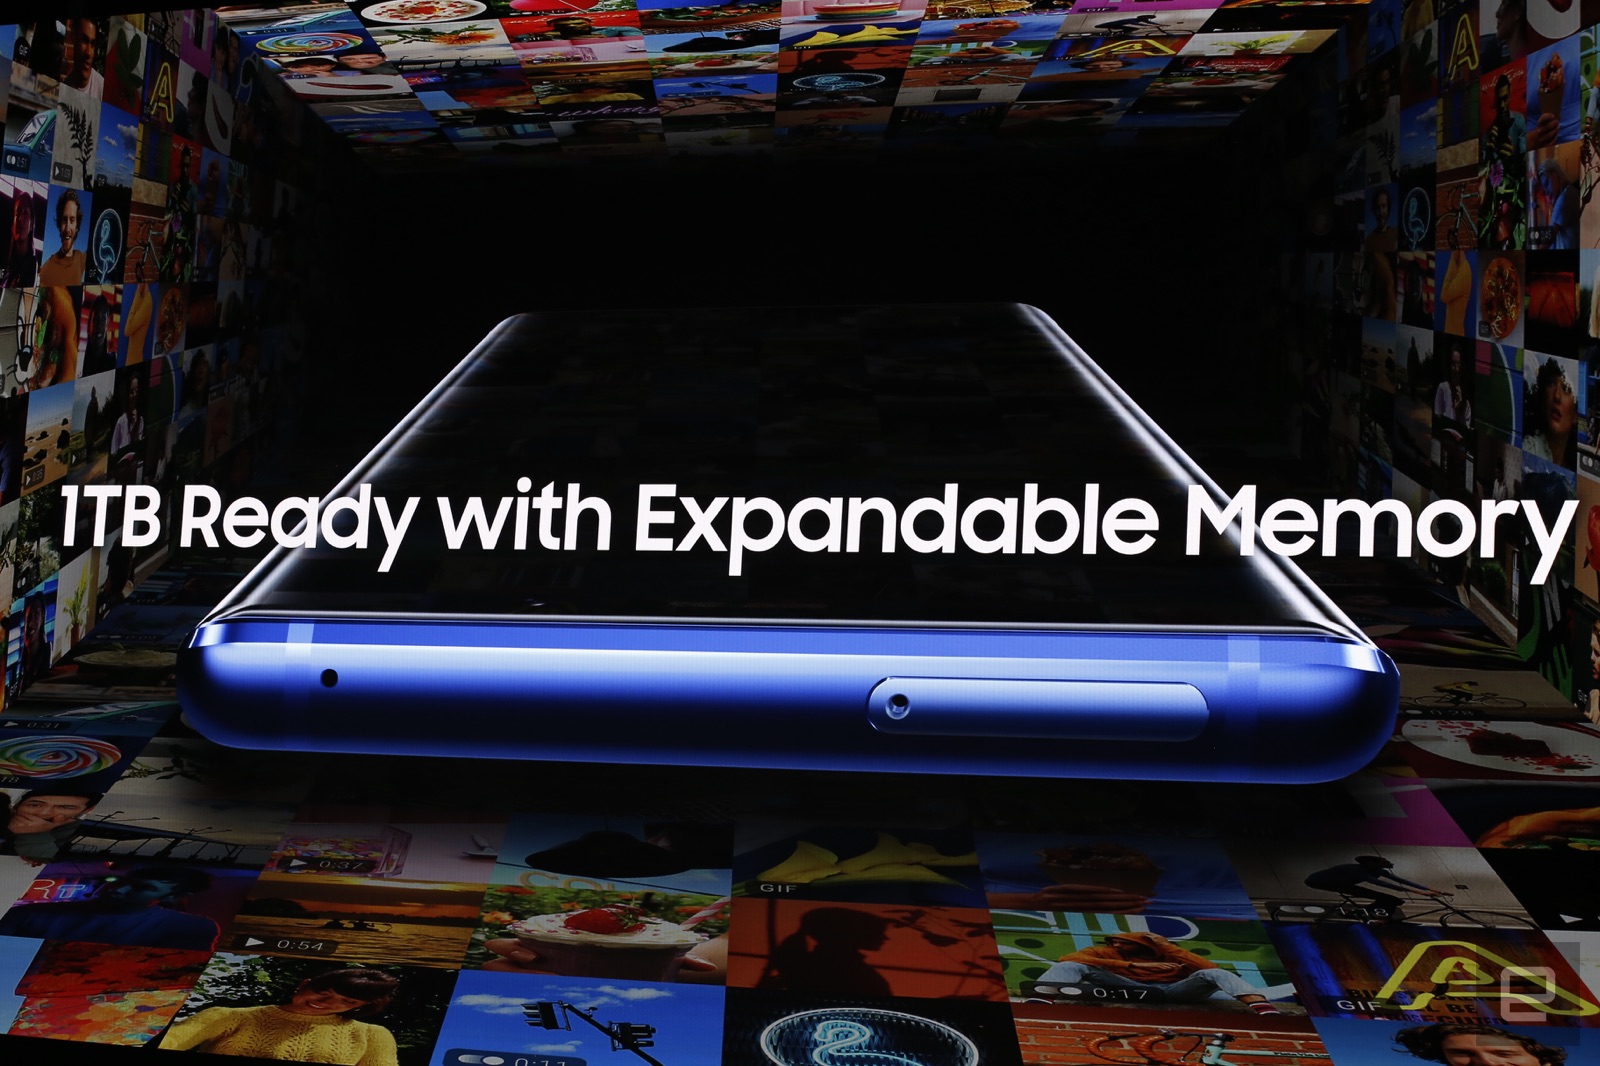 Samsung Galaxy Note 9 chính thức được ra mắt với
Snapdragon 845, 8GB RAM, bút S Pen mới, giá từ 24.5 triệu